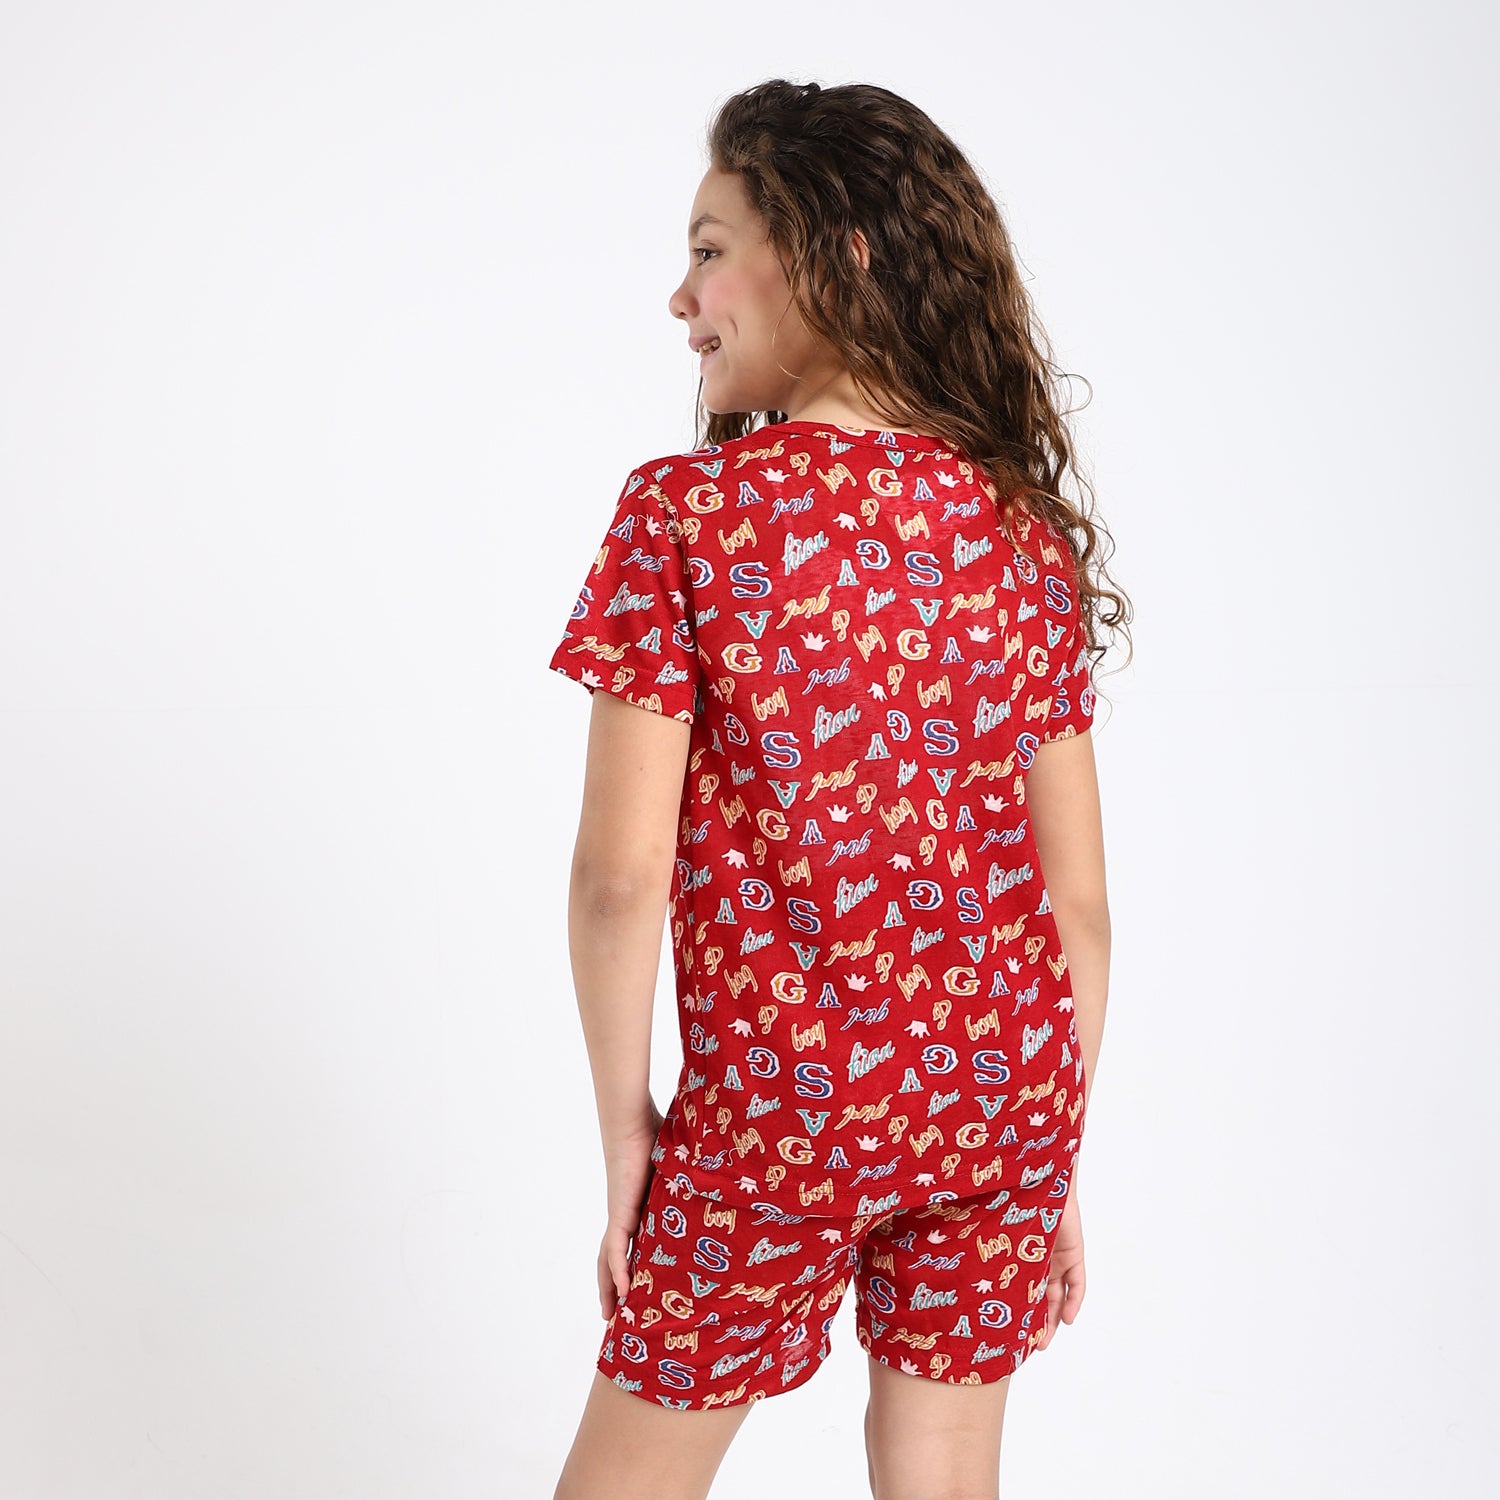 Unisex Self Patterned Pajama Short Set